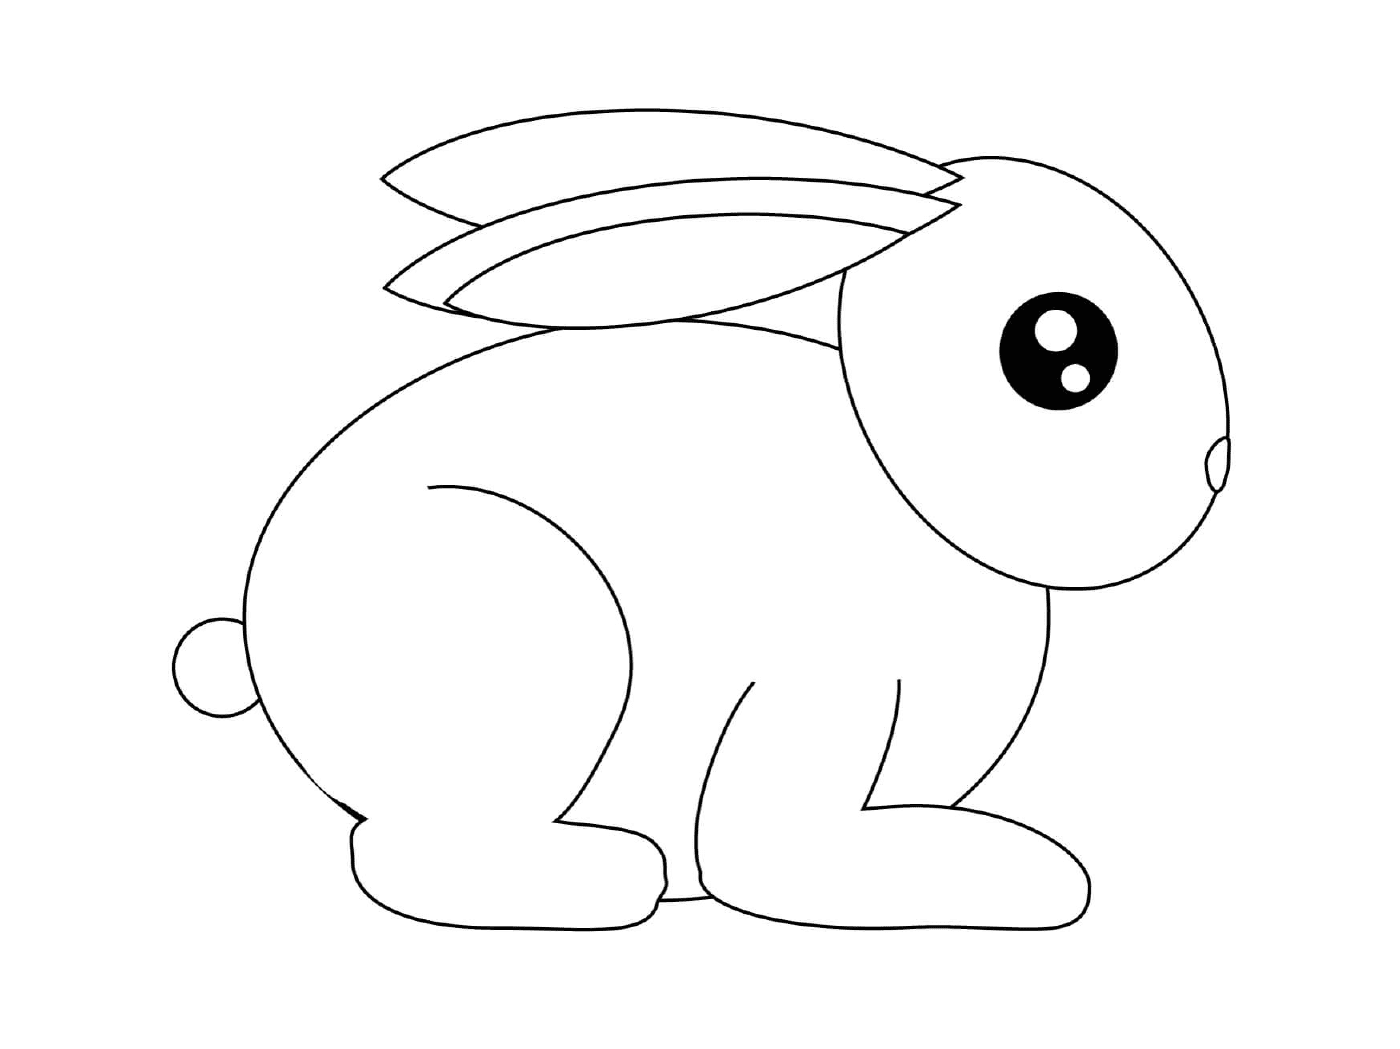  الأرنب الصغير المستعد للركض 